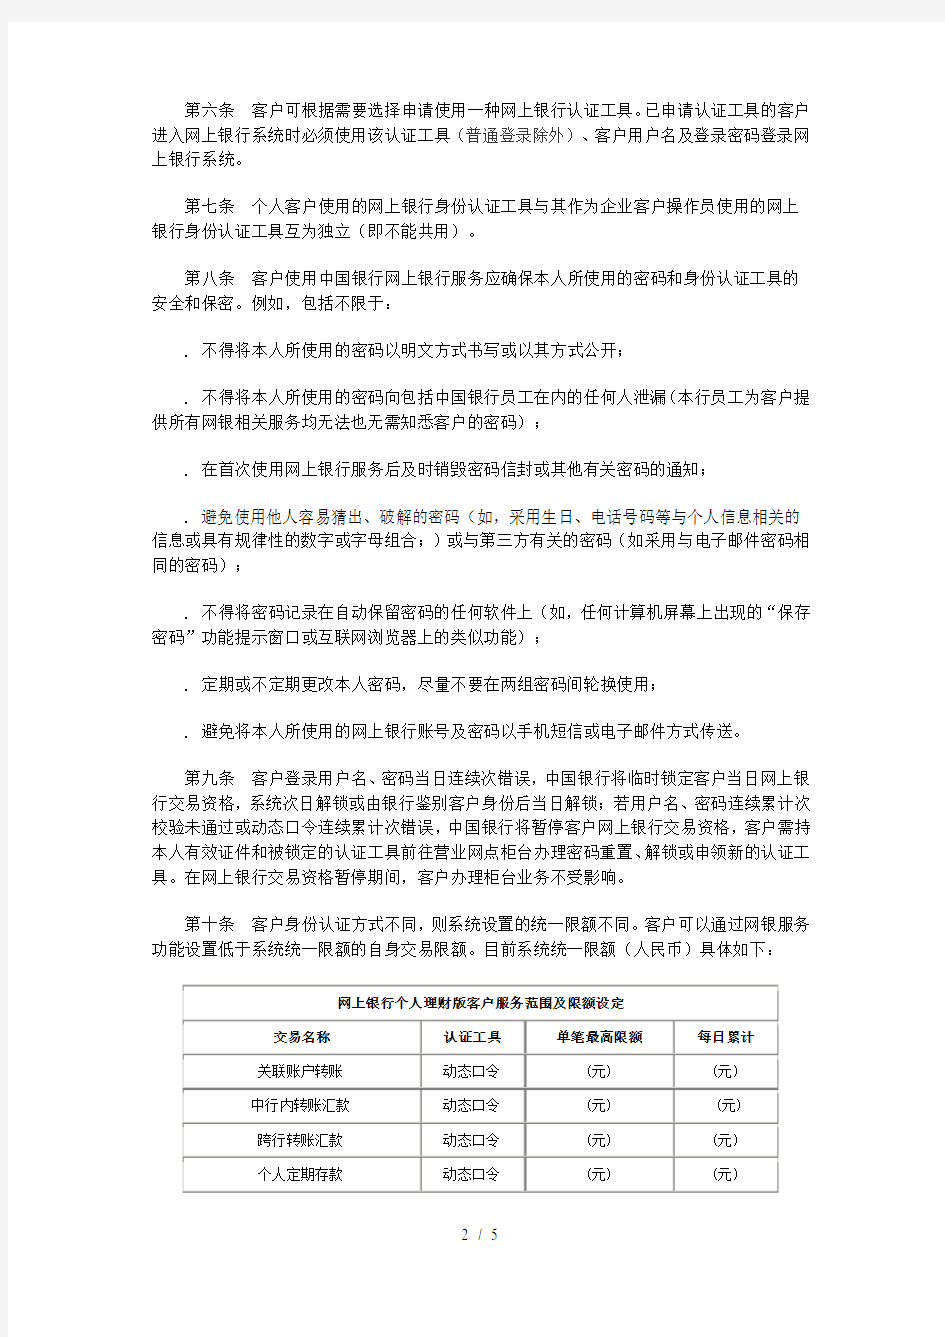 中国银行股份有限公司网上银行个人服务业务规则